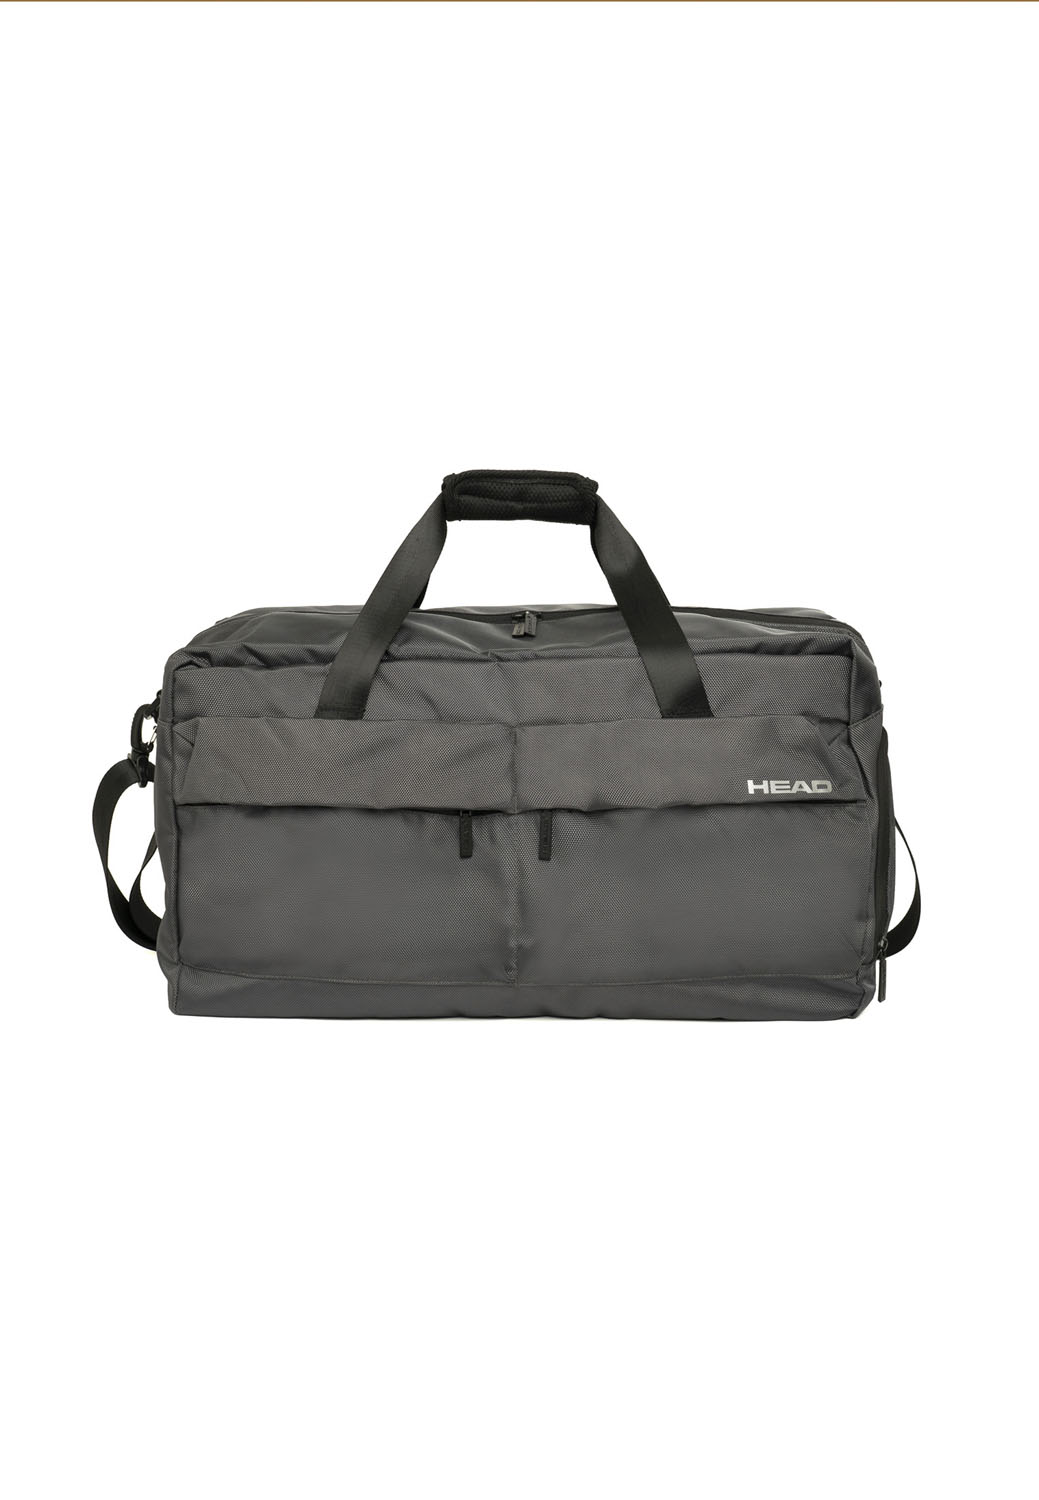 HEAD Club Duffle Bag Reisetasche Grey | jetzt online kaufen auf Koffer.de ✓